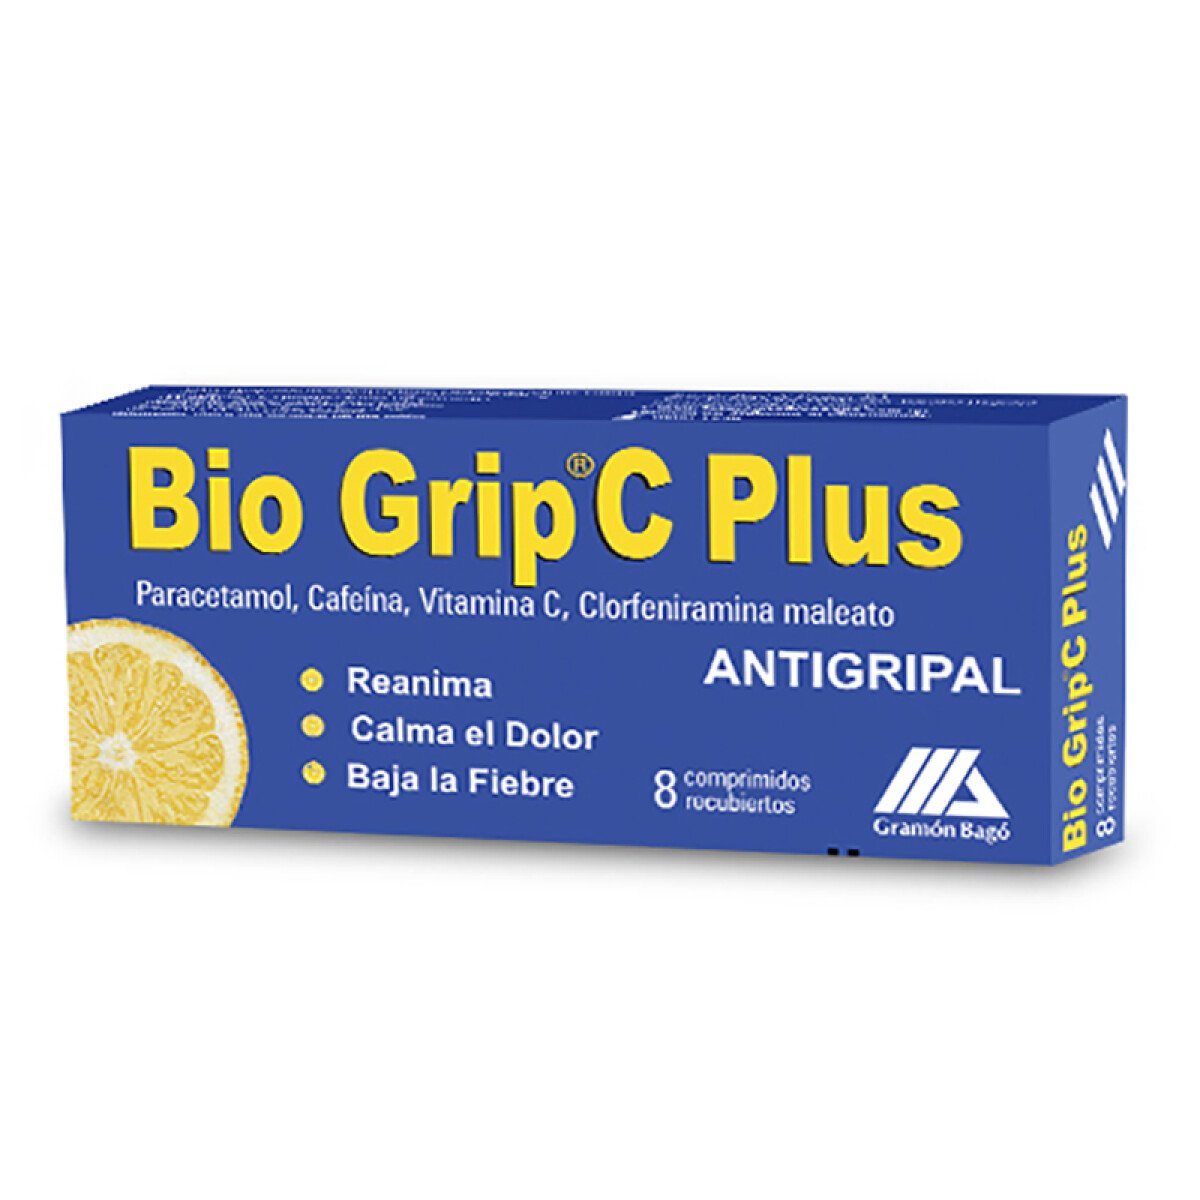 Bio grip C Plus antigripal x8 comprimidos 